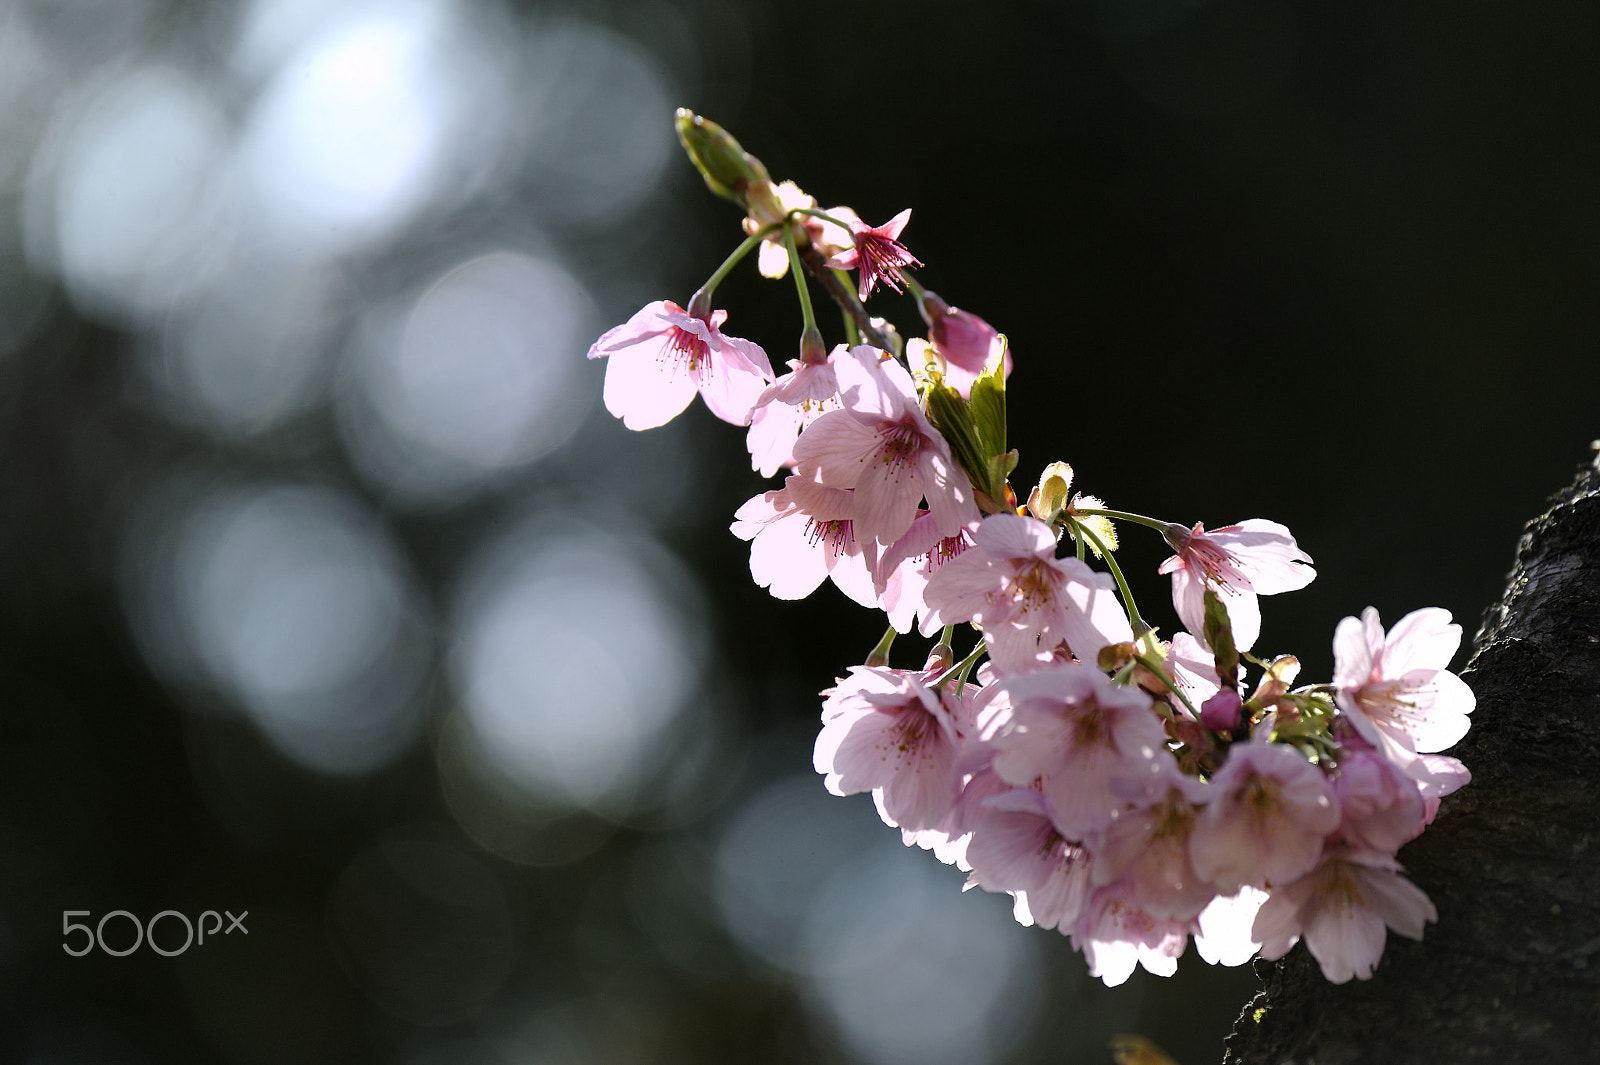 Nikon D700 + Nikon AF-S Nikkor 80-400mm F4.5-5.6G ED VR sample photo. Cherry blossoms photography